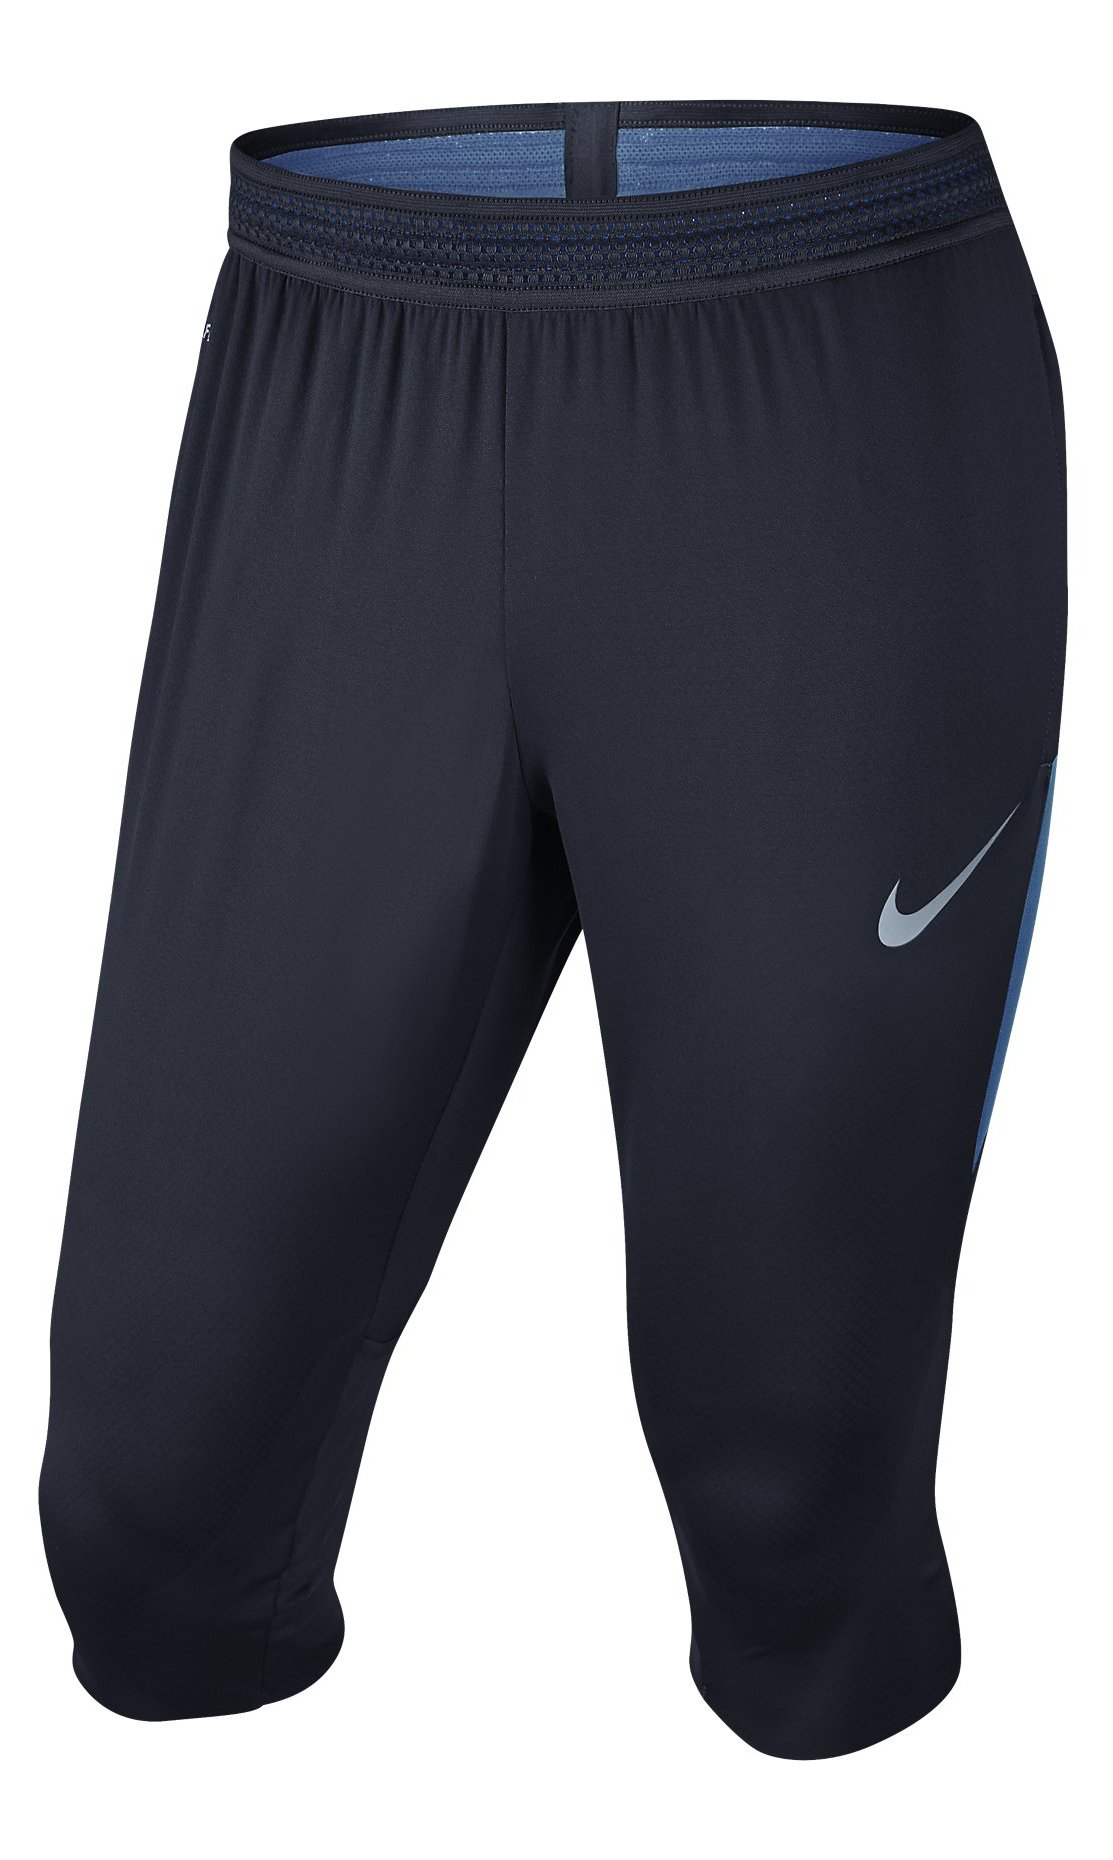 Pánské fotbalové tříčtvrteční kalhoty Nike Dry Strike